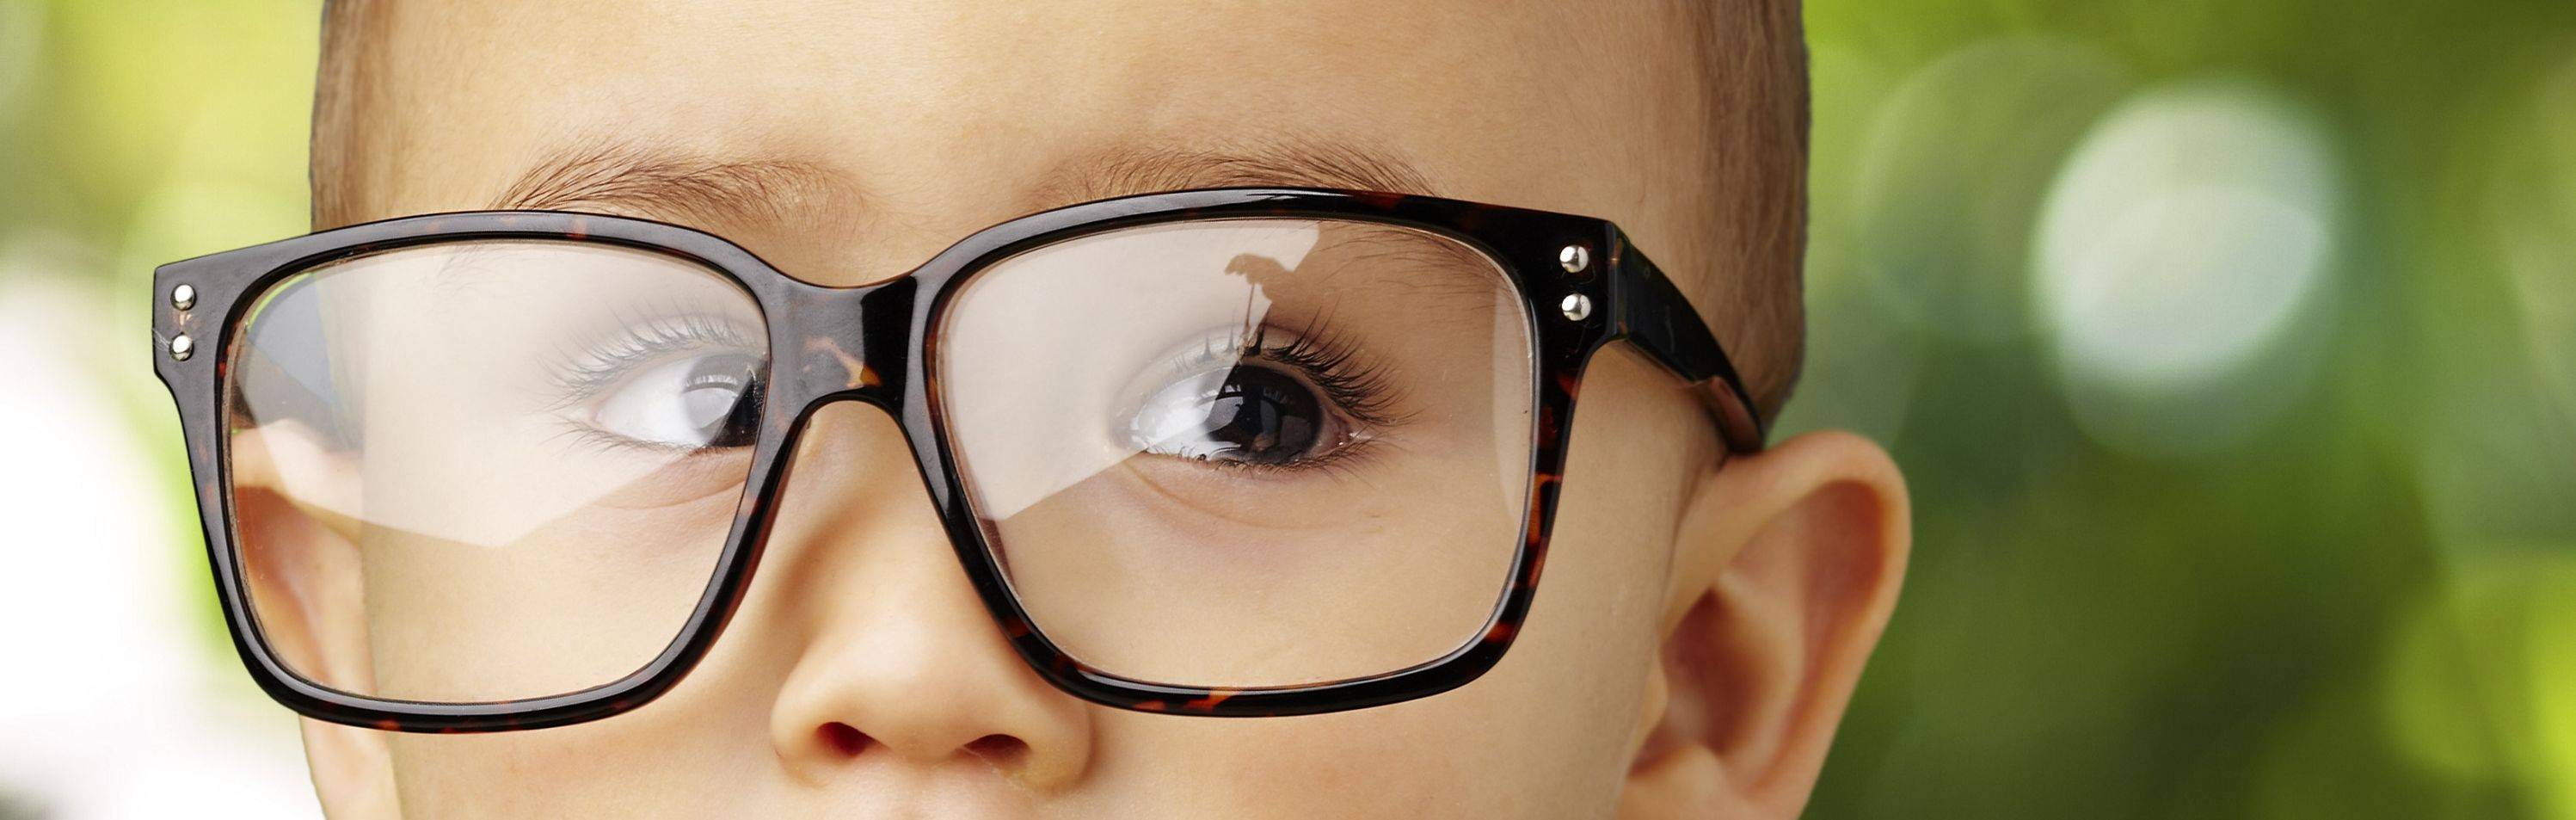 Очки при астигматизме для детей: как подобрать и привыкнуть? — глаза эксперт